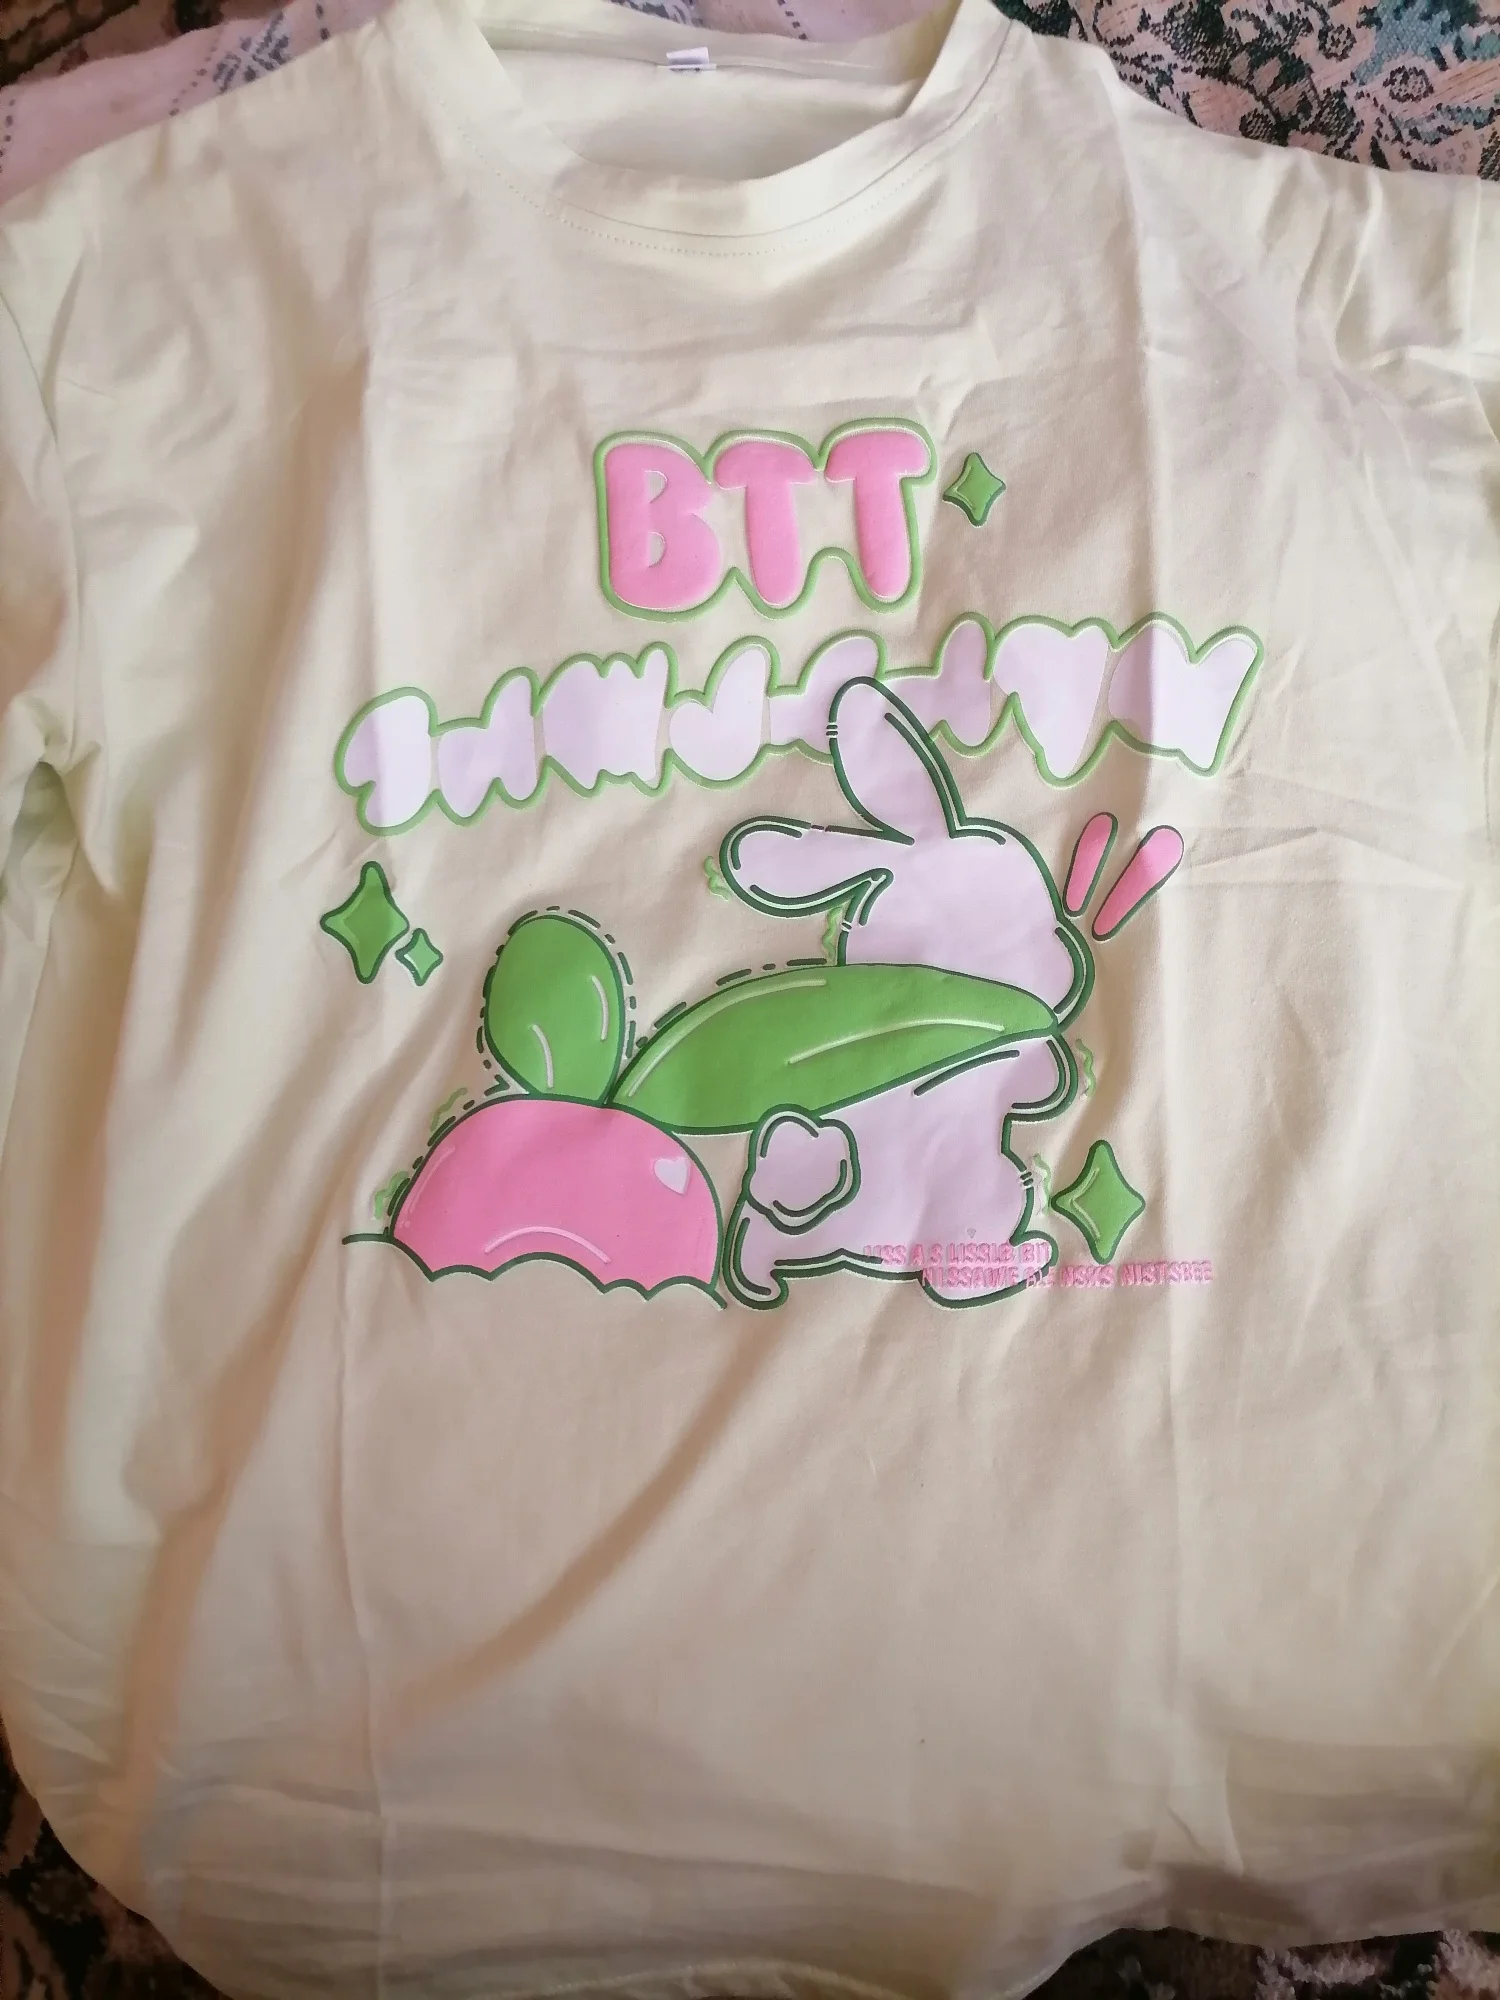 Camiseta japonesa com estampa de coelho retrô desenho animado